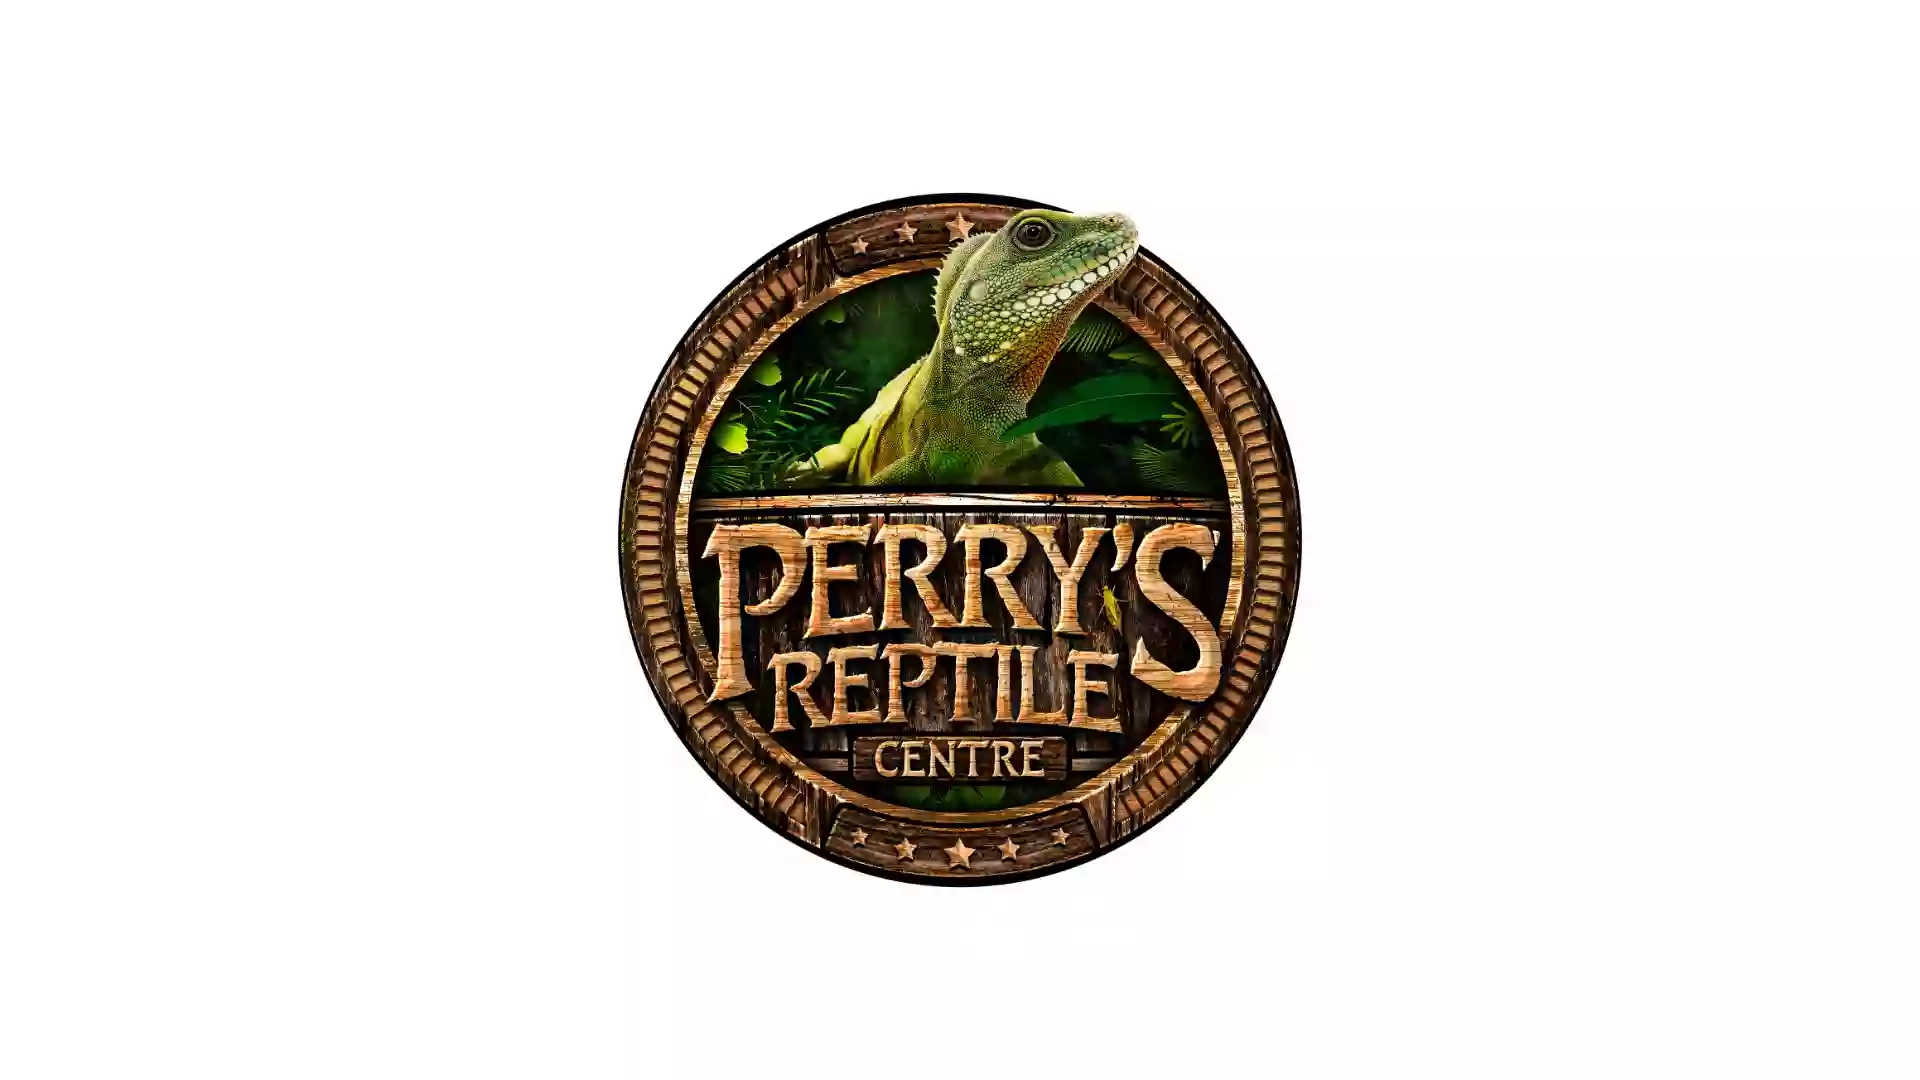 Perry's Reptile Centre